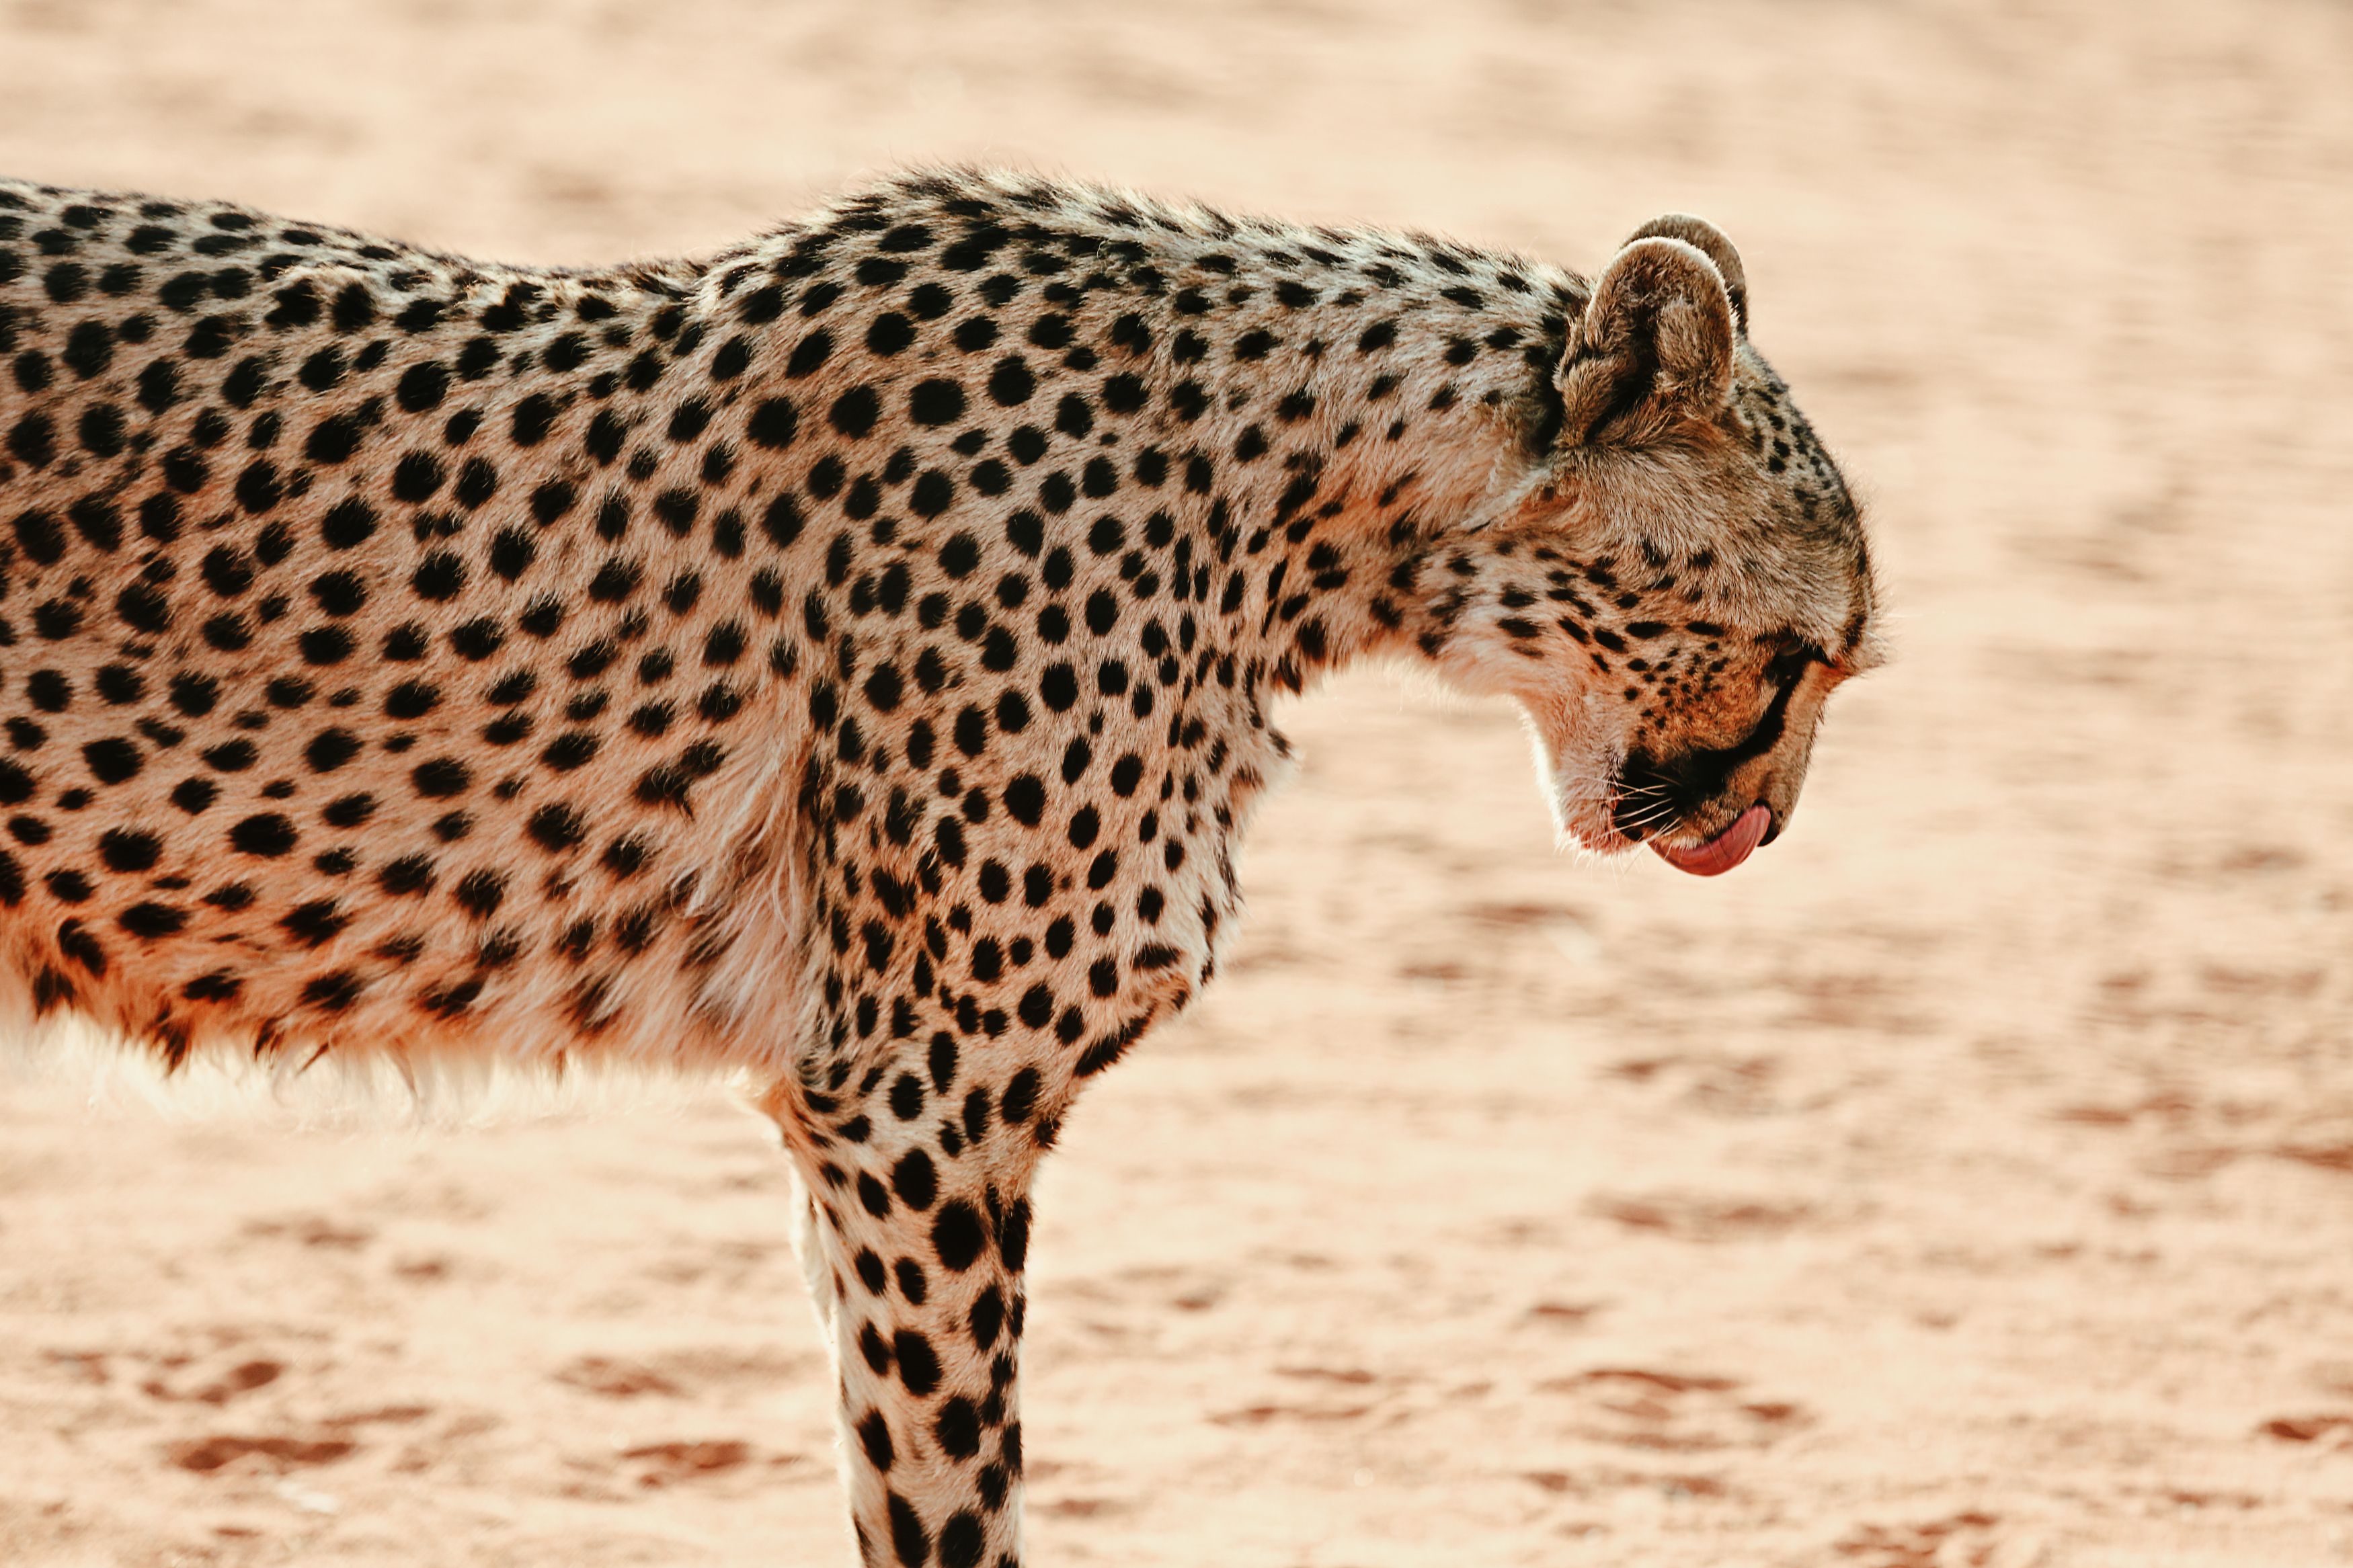 #гепард #африка #сафари #намибия #калахари  #africa #namibia #safari #etosha #cheetah, Наталия Деркач